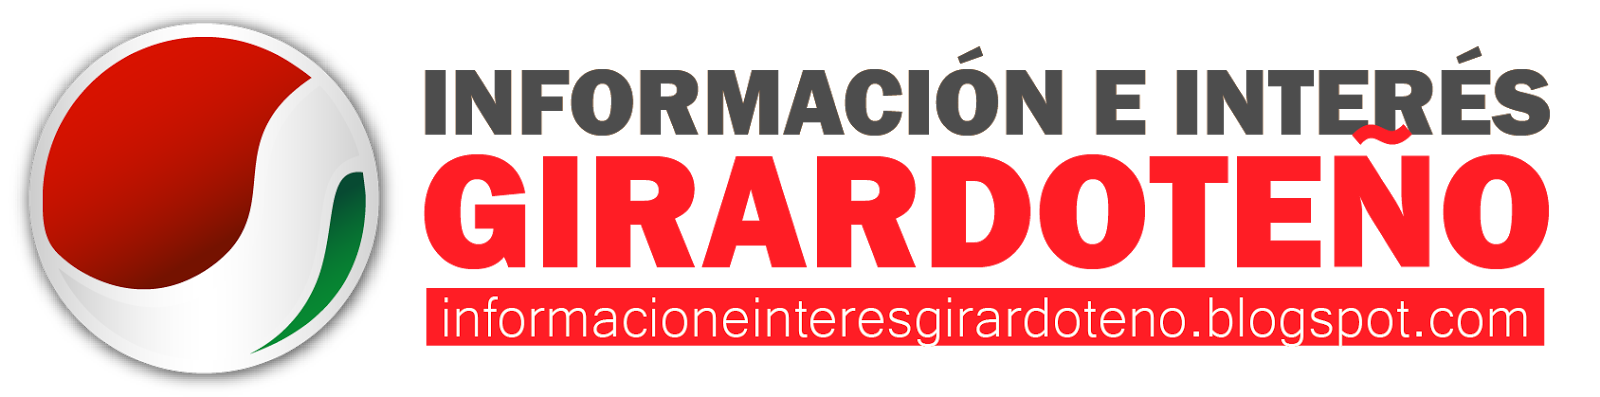 Información e interés Girardoteño. Girardot